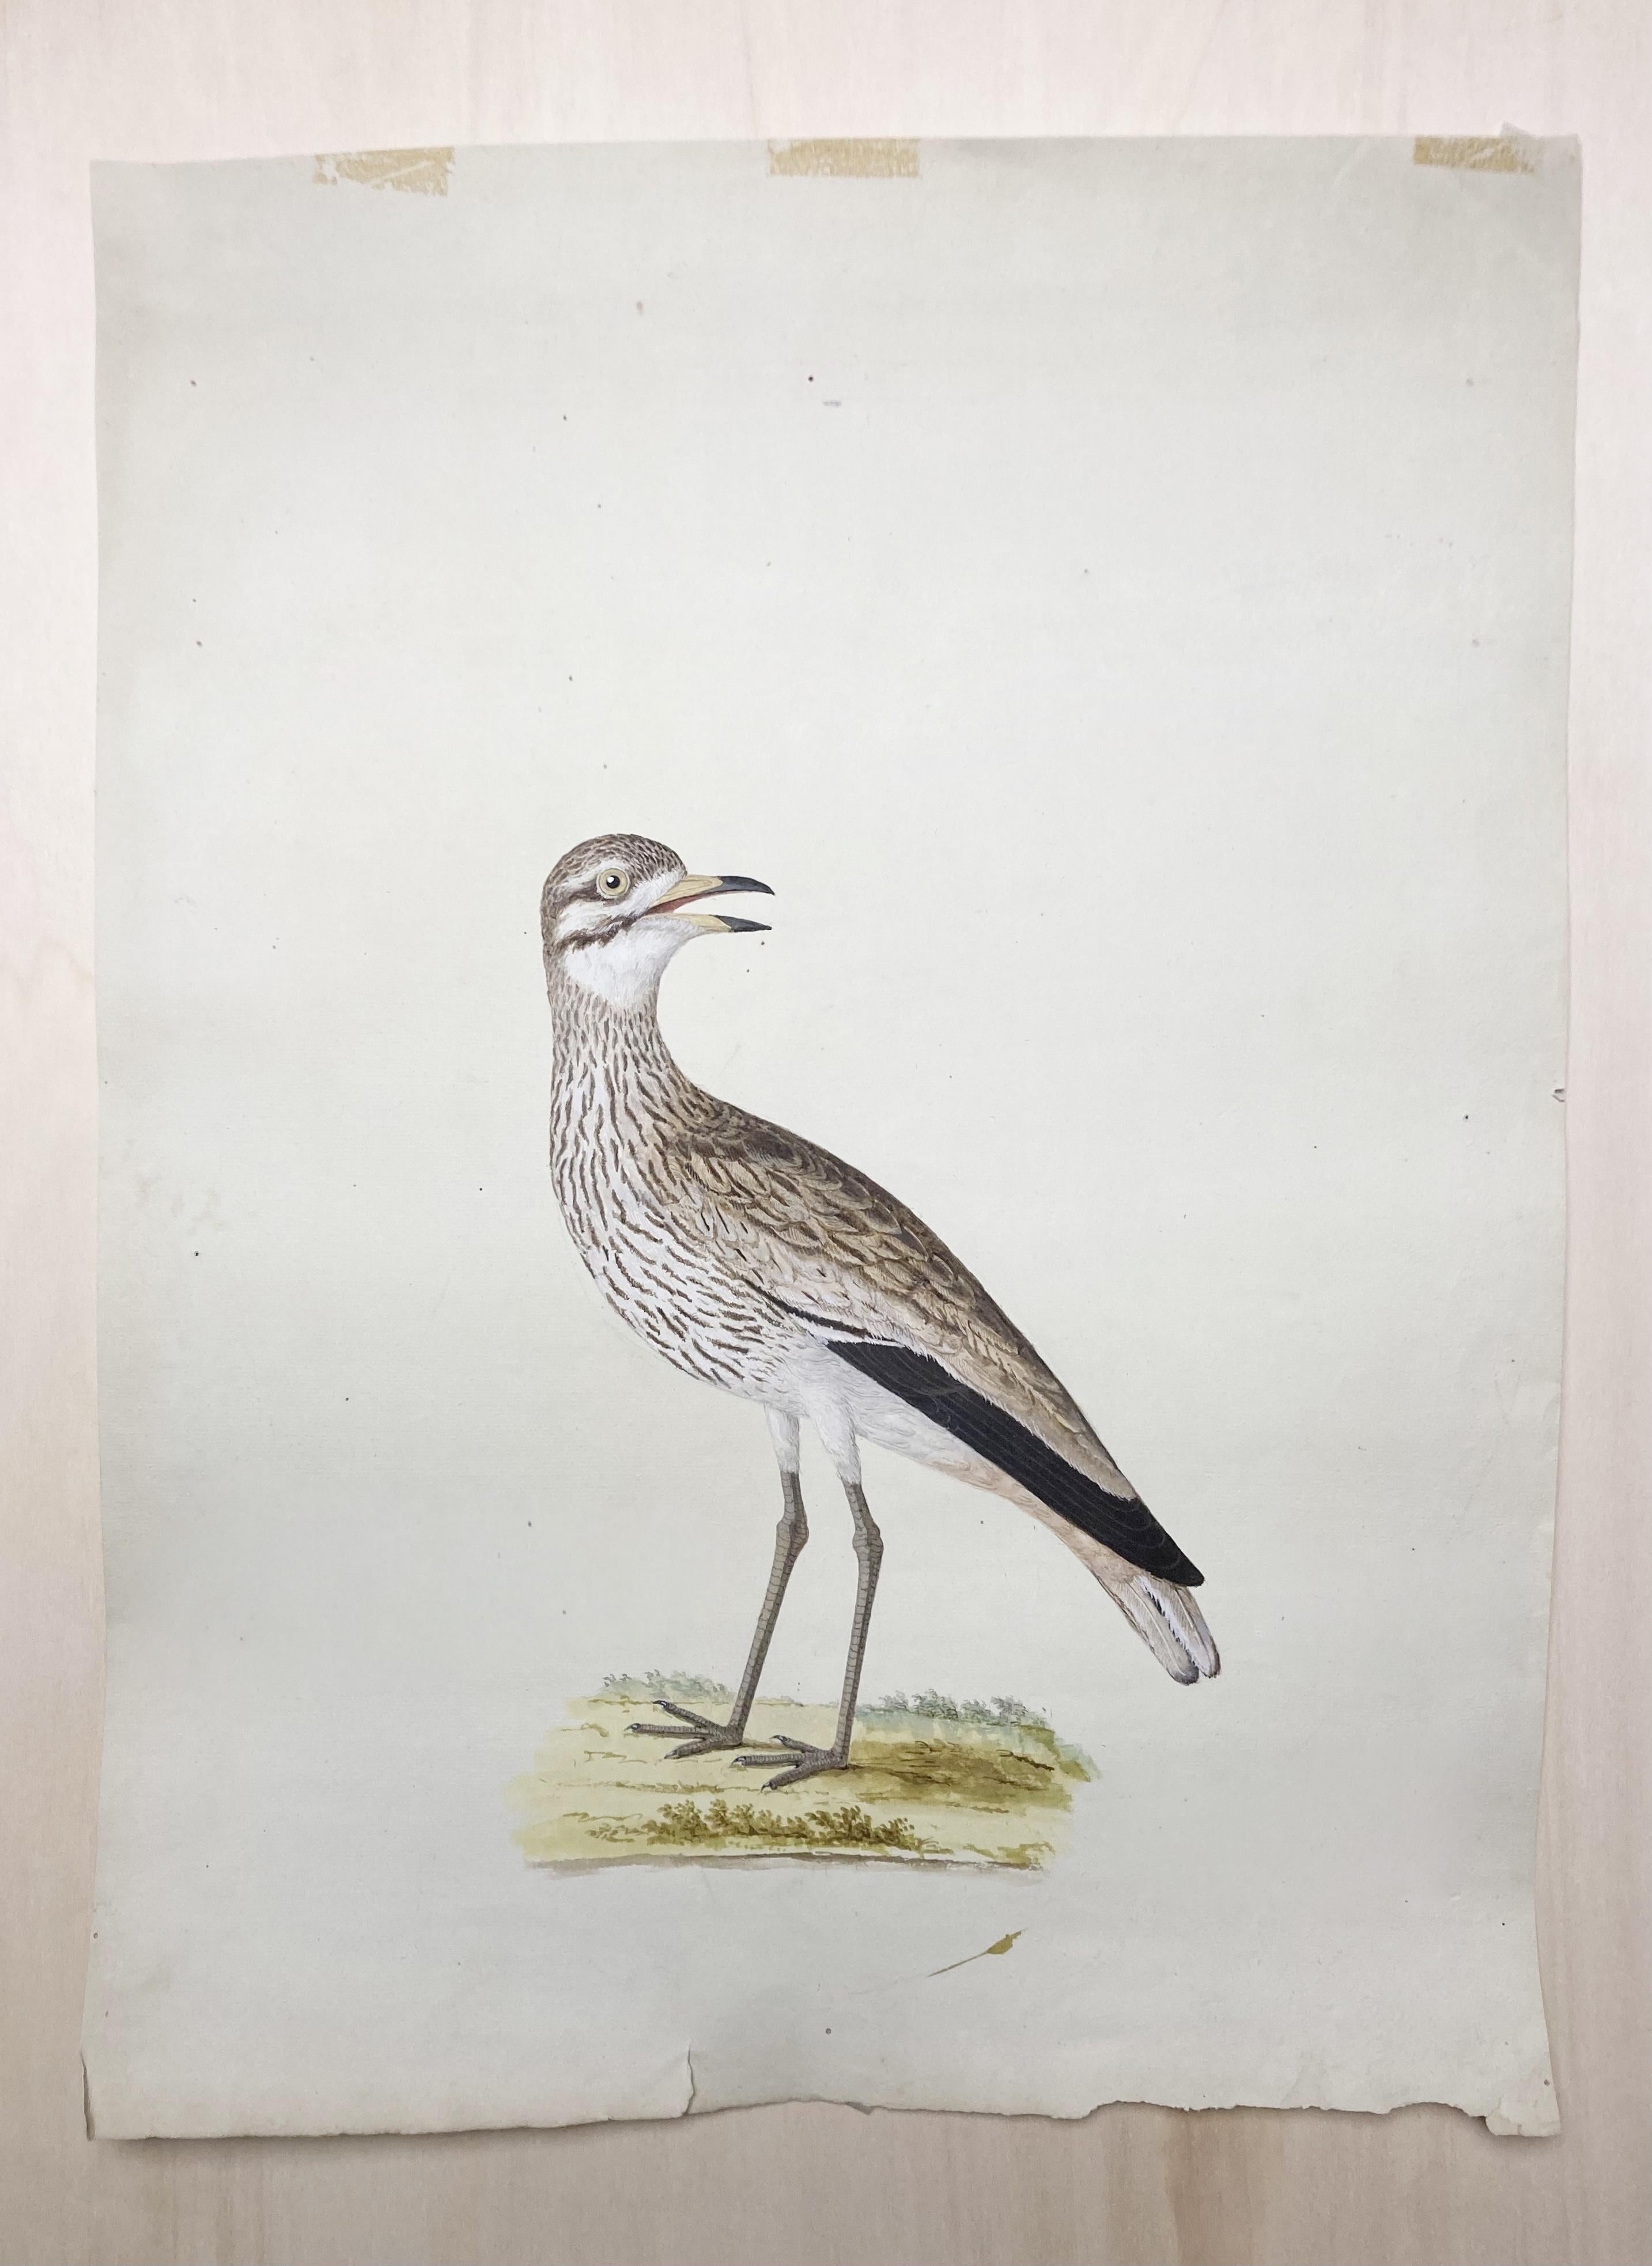 Wildtierzeichnung eines erleuchteten Malers von grauen und weißen Vögeln